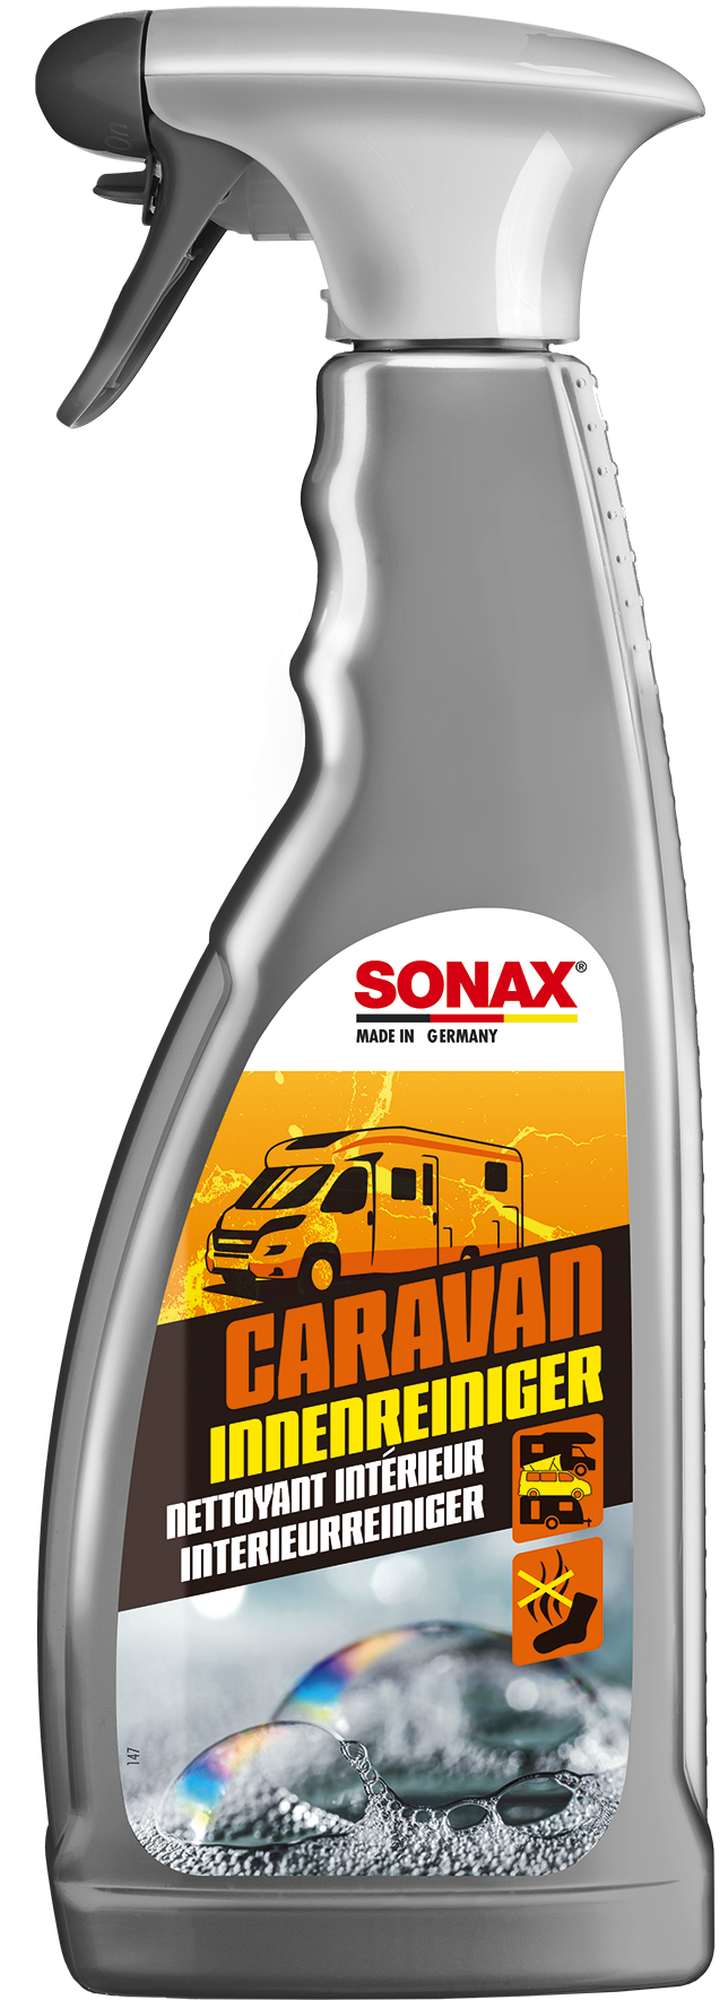 Sonax Caravan Innenreiniger Wohnmobil - Wohnmobilreiniger, 750 ml